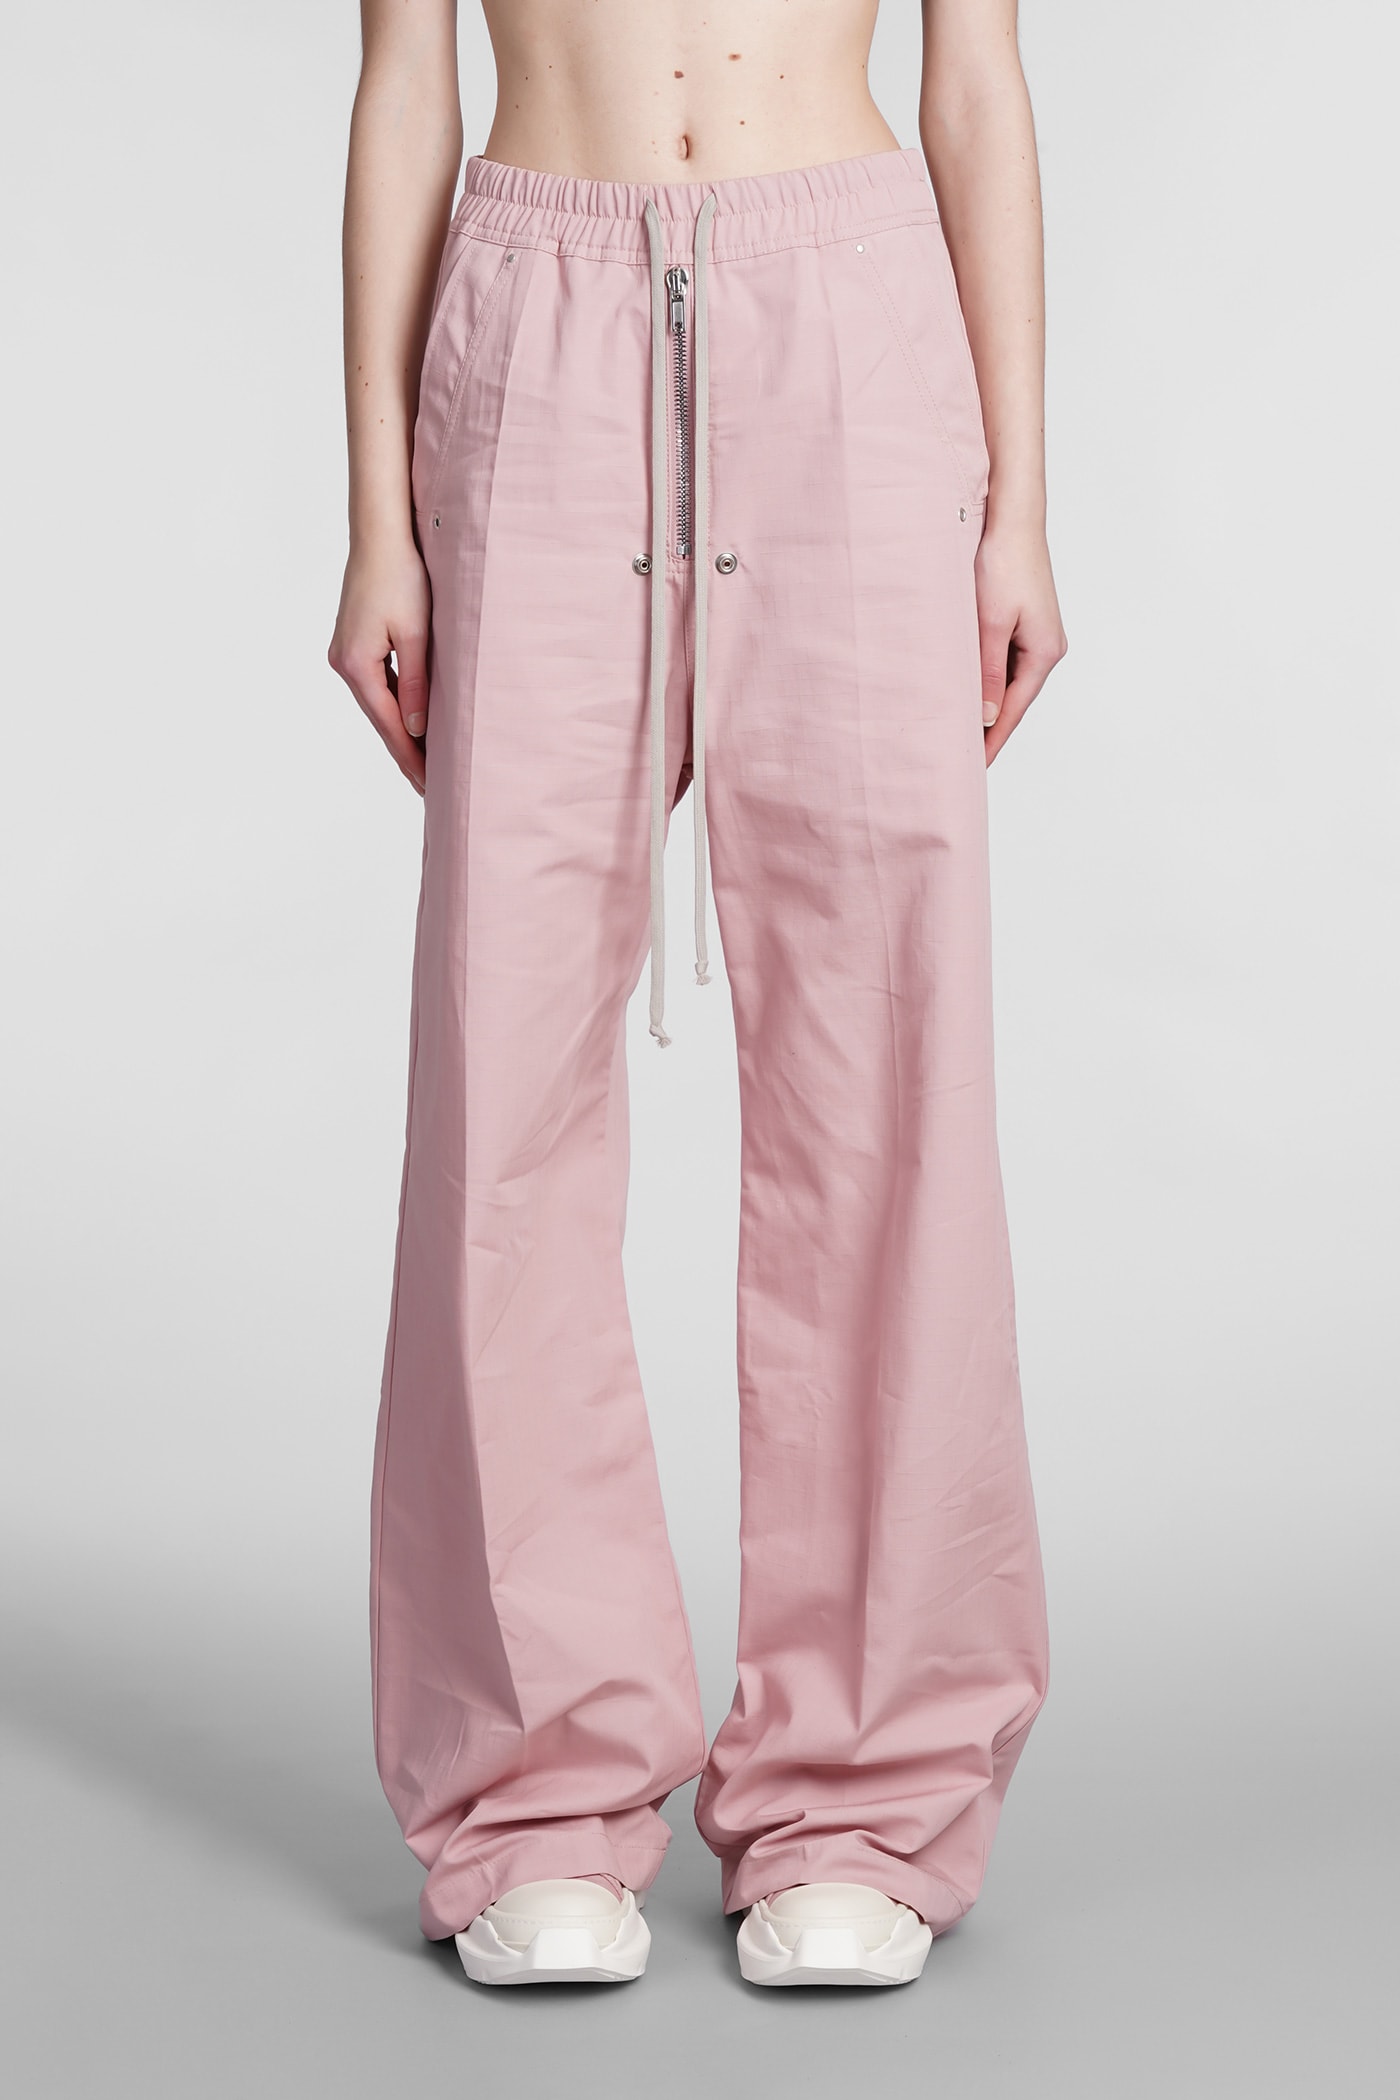 DRKSHDW Geth Belas Pants In Rose-pink Cotton